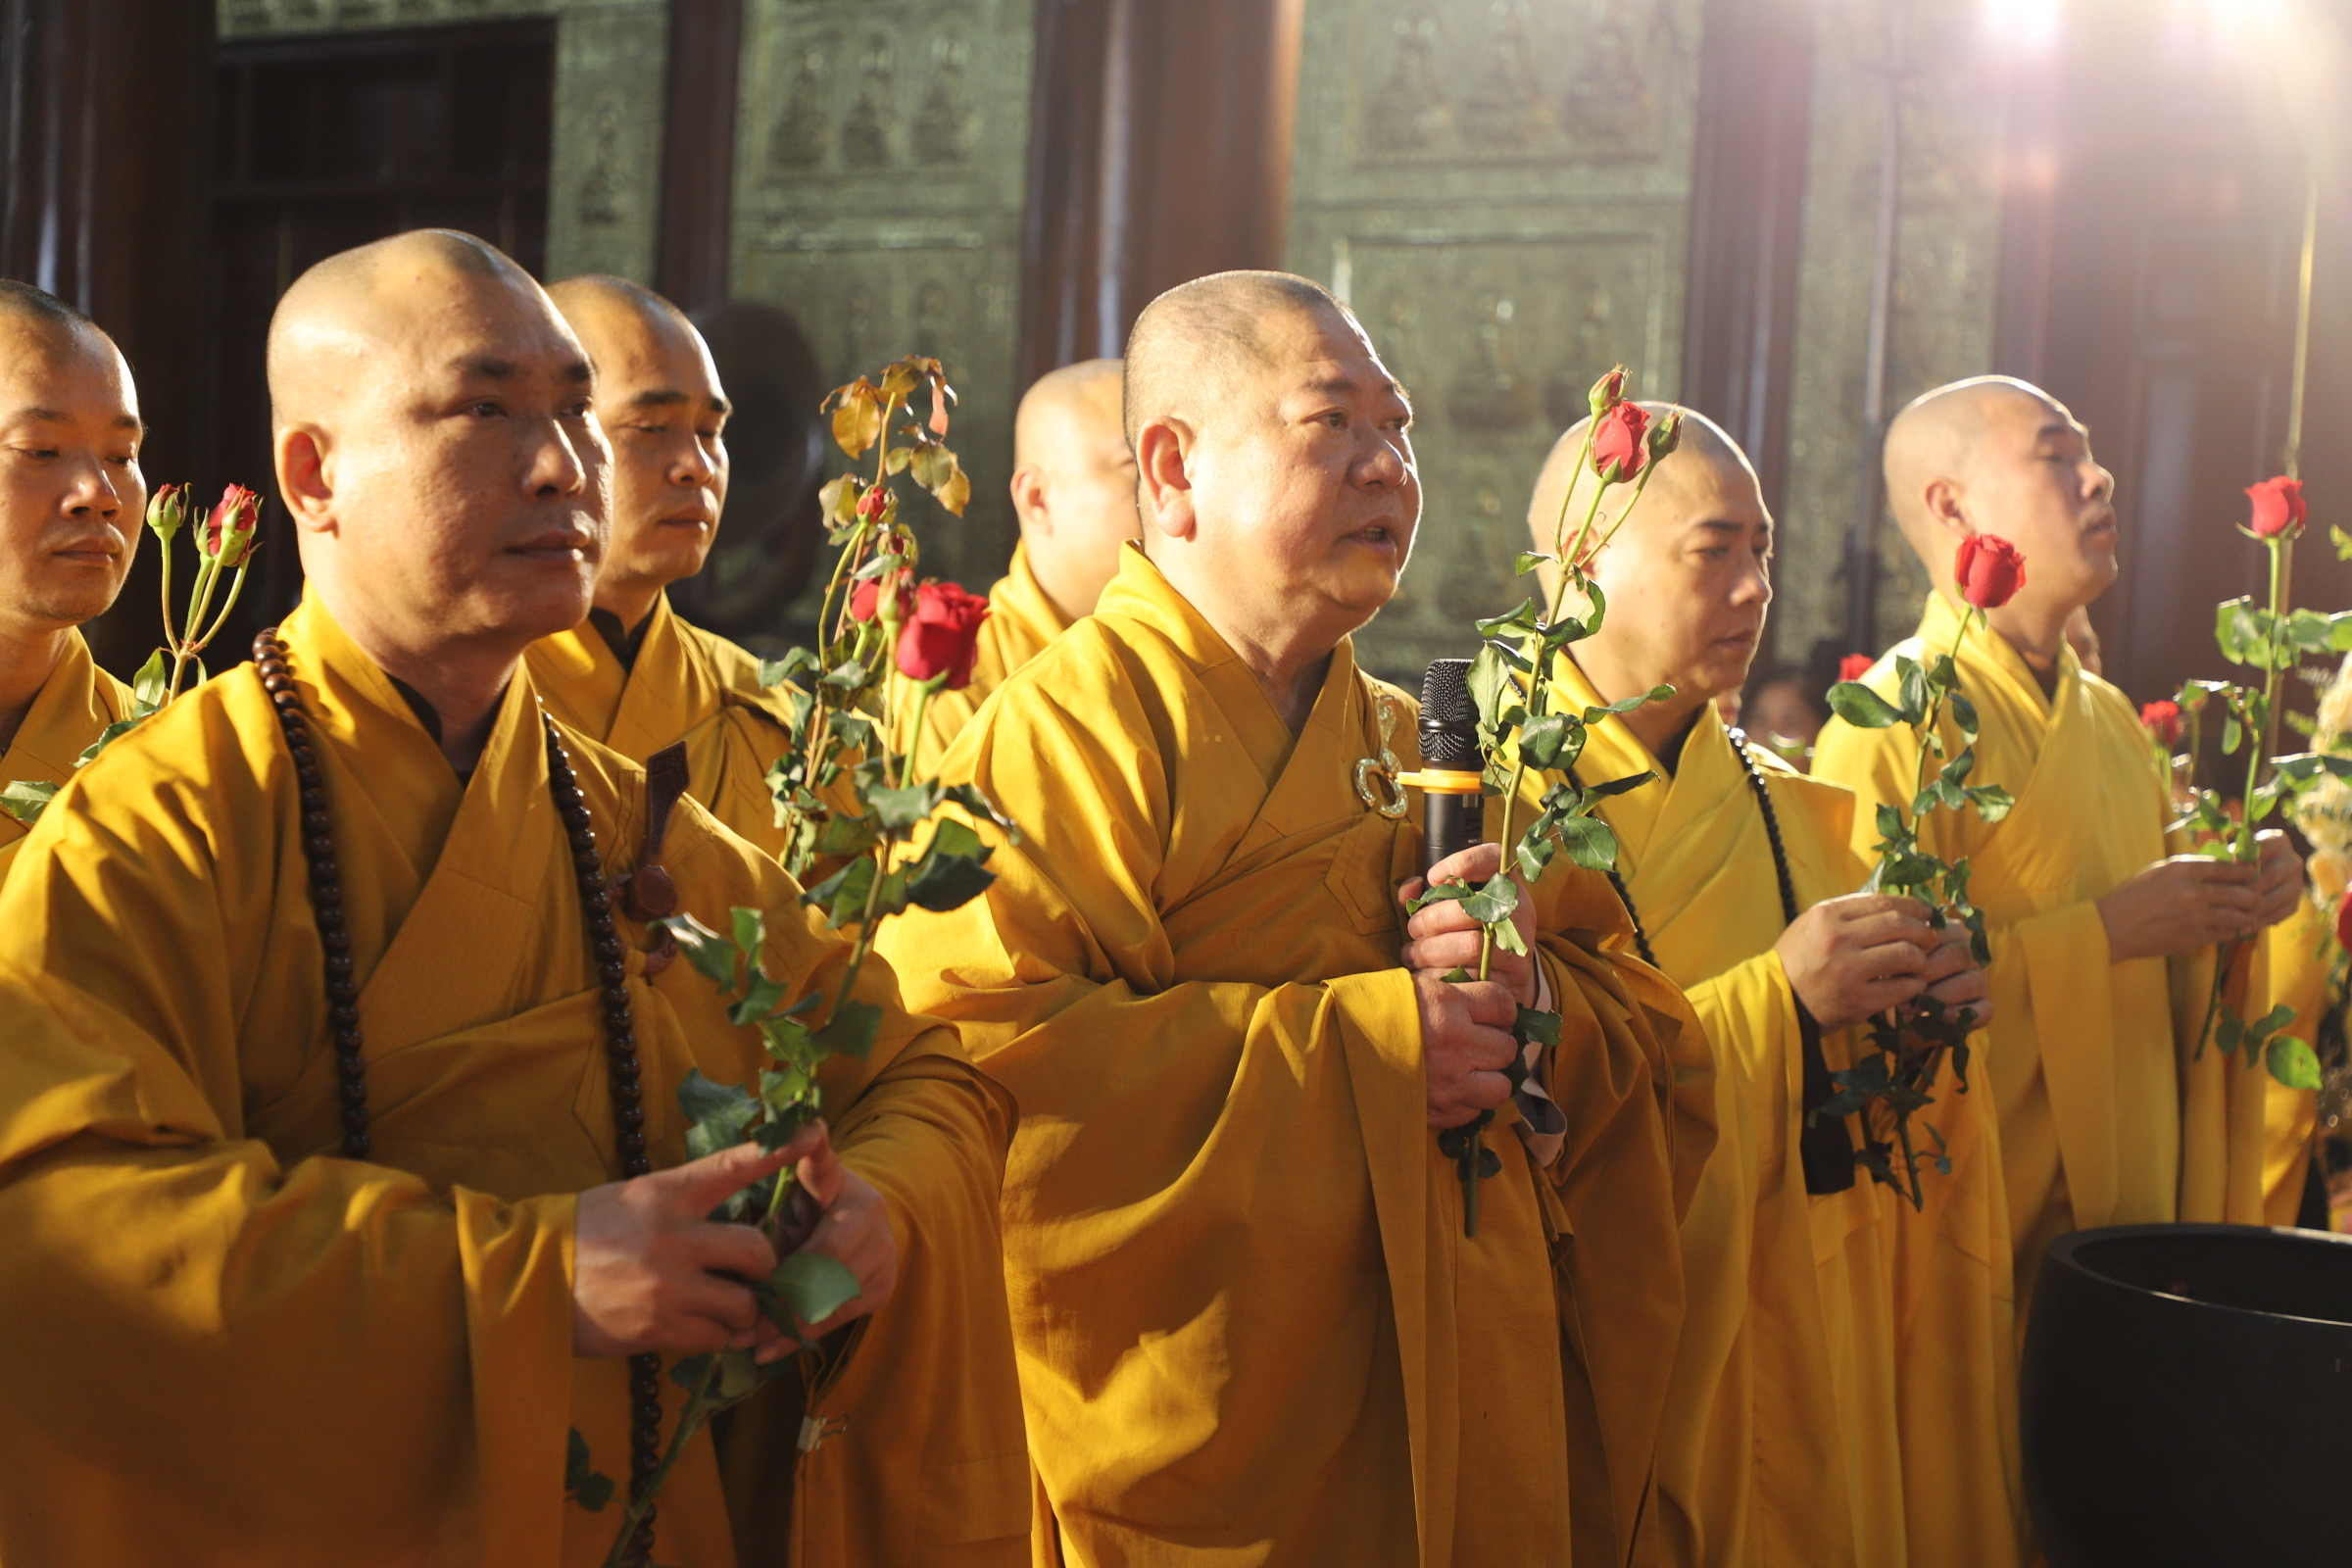 Hà Nội: Tổ đình Đào Xuyên tổ chức Lễ tưởng niệm nhị vị đại lão Hoà thượng nguyên trụ trì Tổ đình